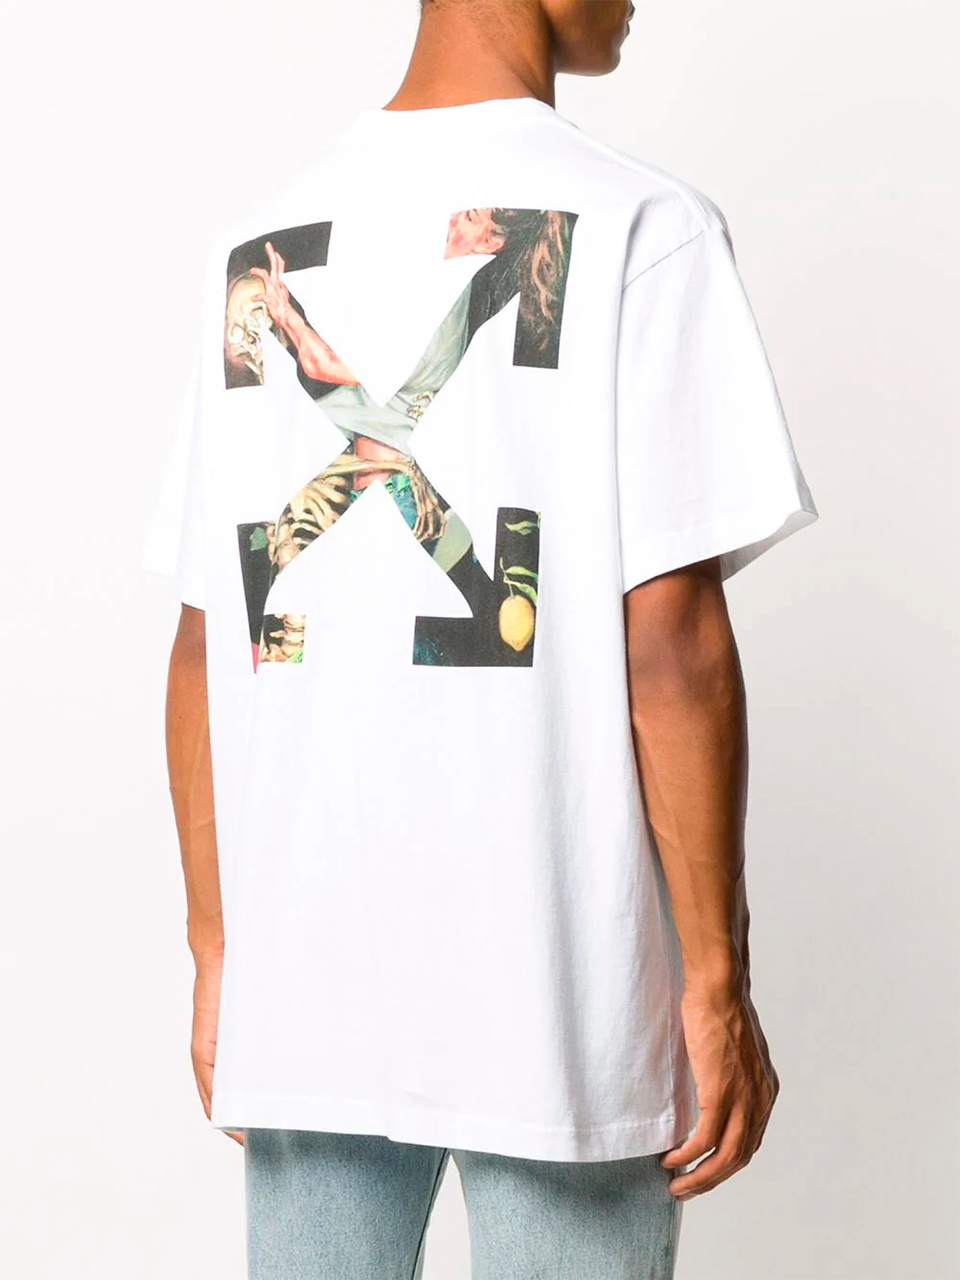 Imagem de: Camiseta Off-White Pascal Branca com Logo